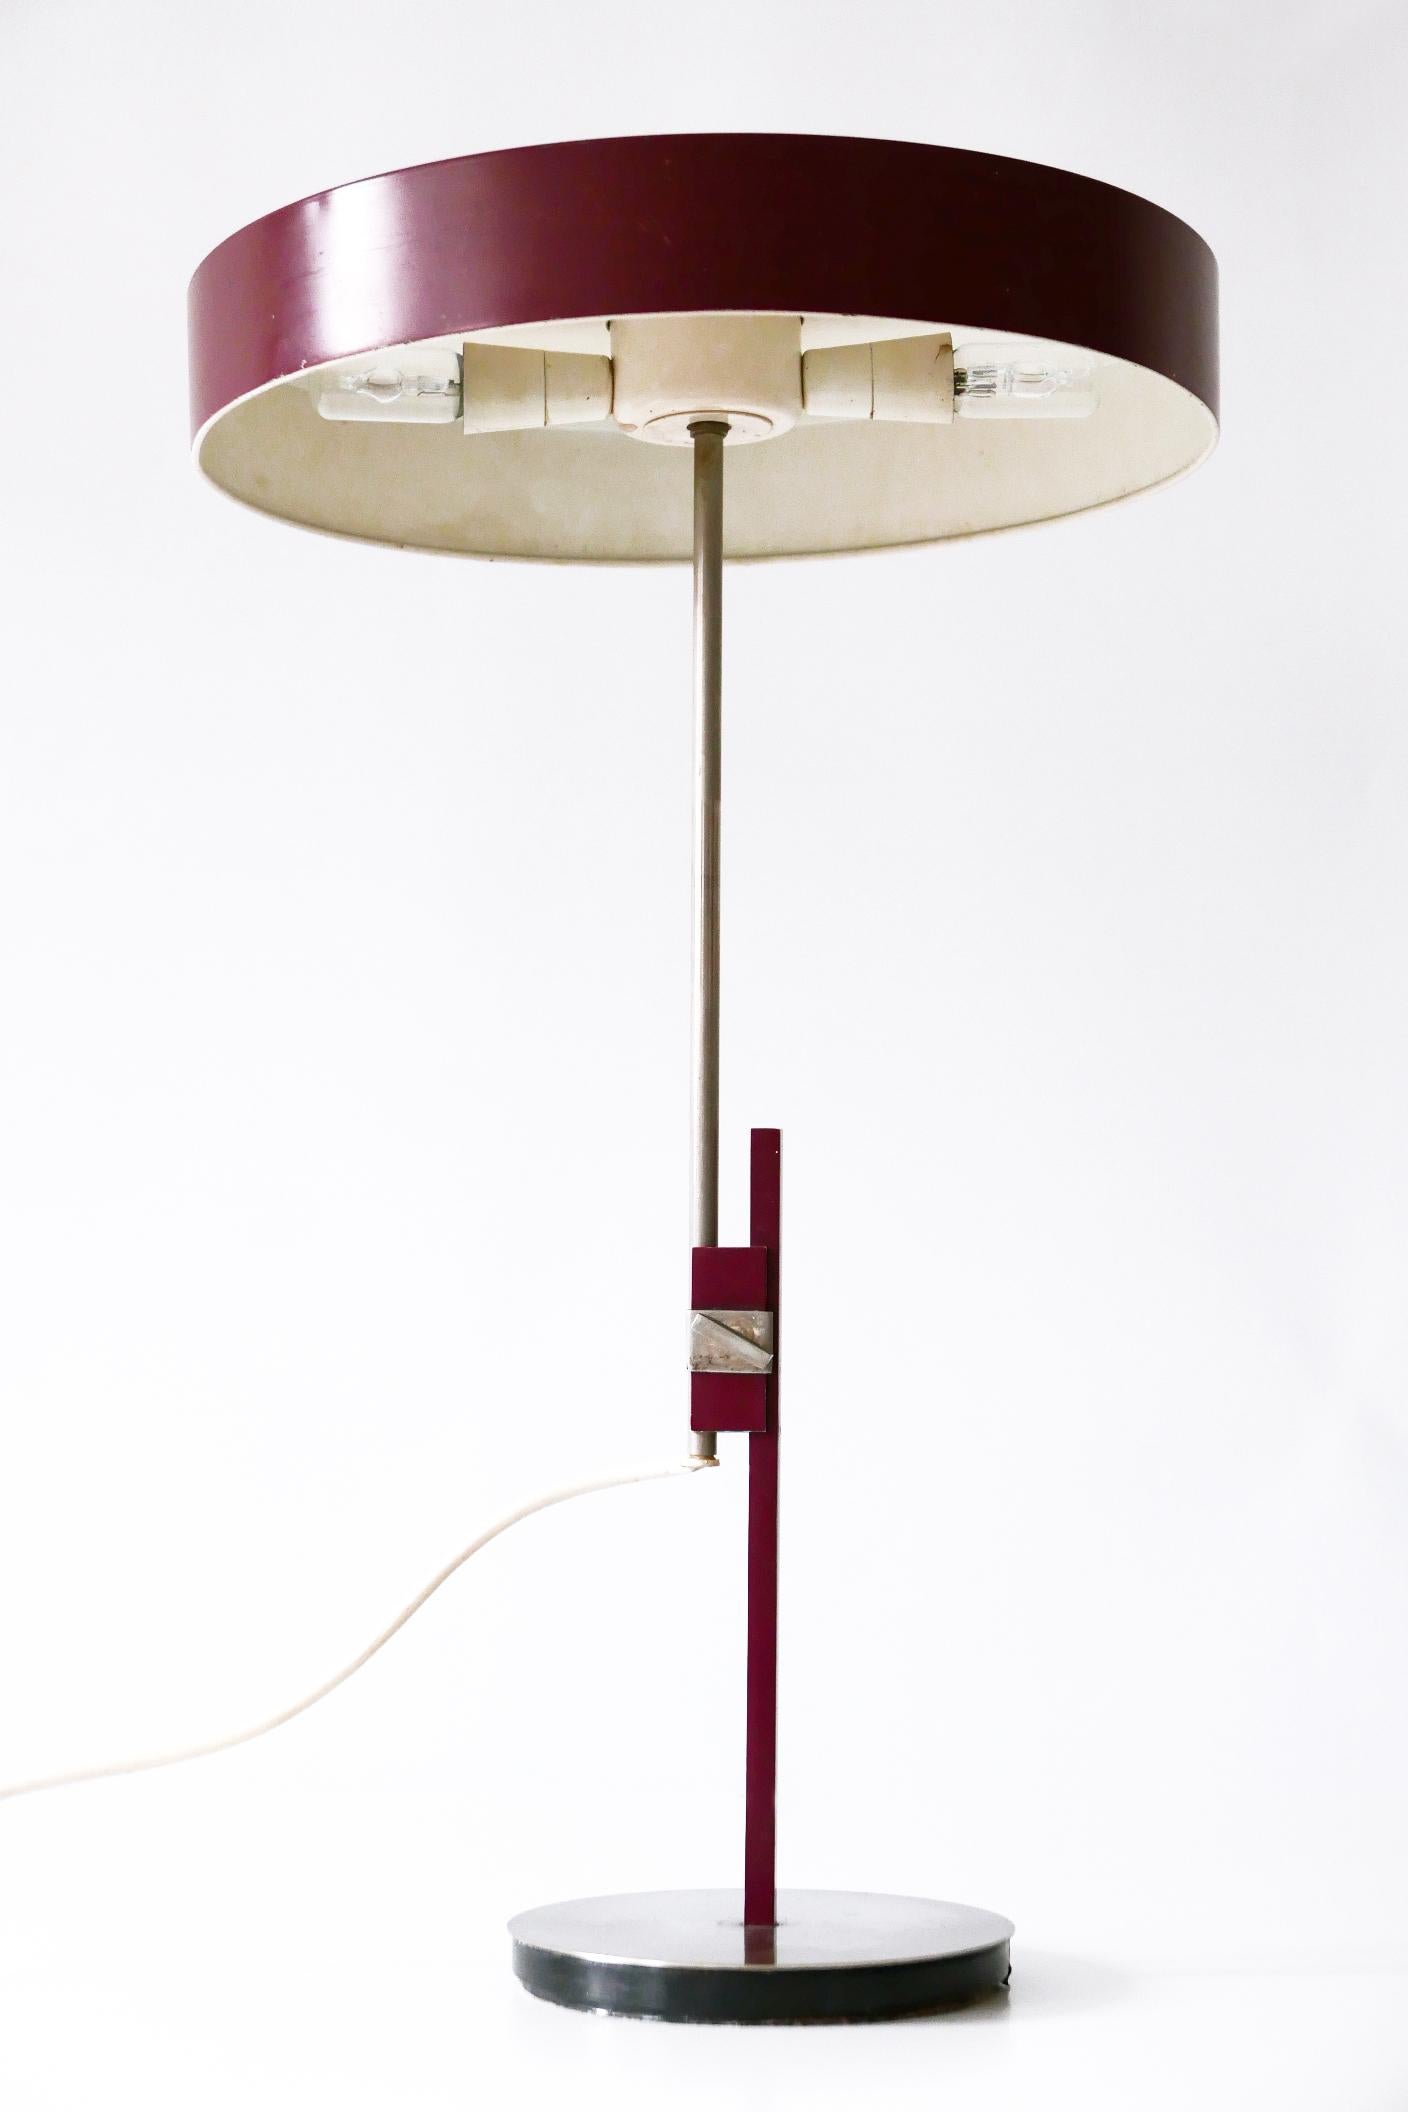 Luxury Mid-Century Modern President Table Lamp by Kaiser Leuchten 1960s Germany 1